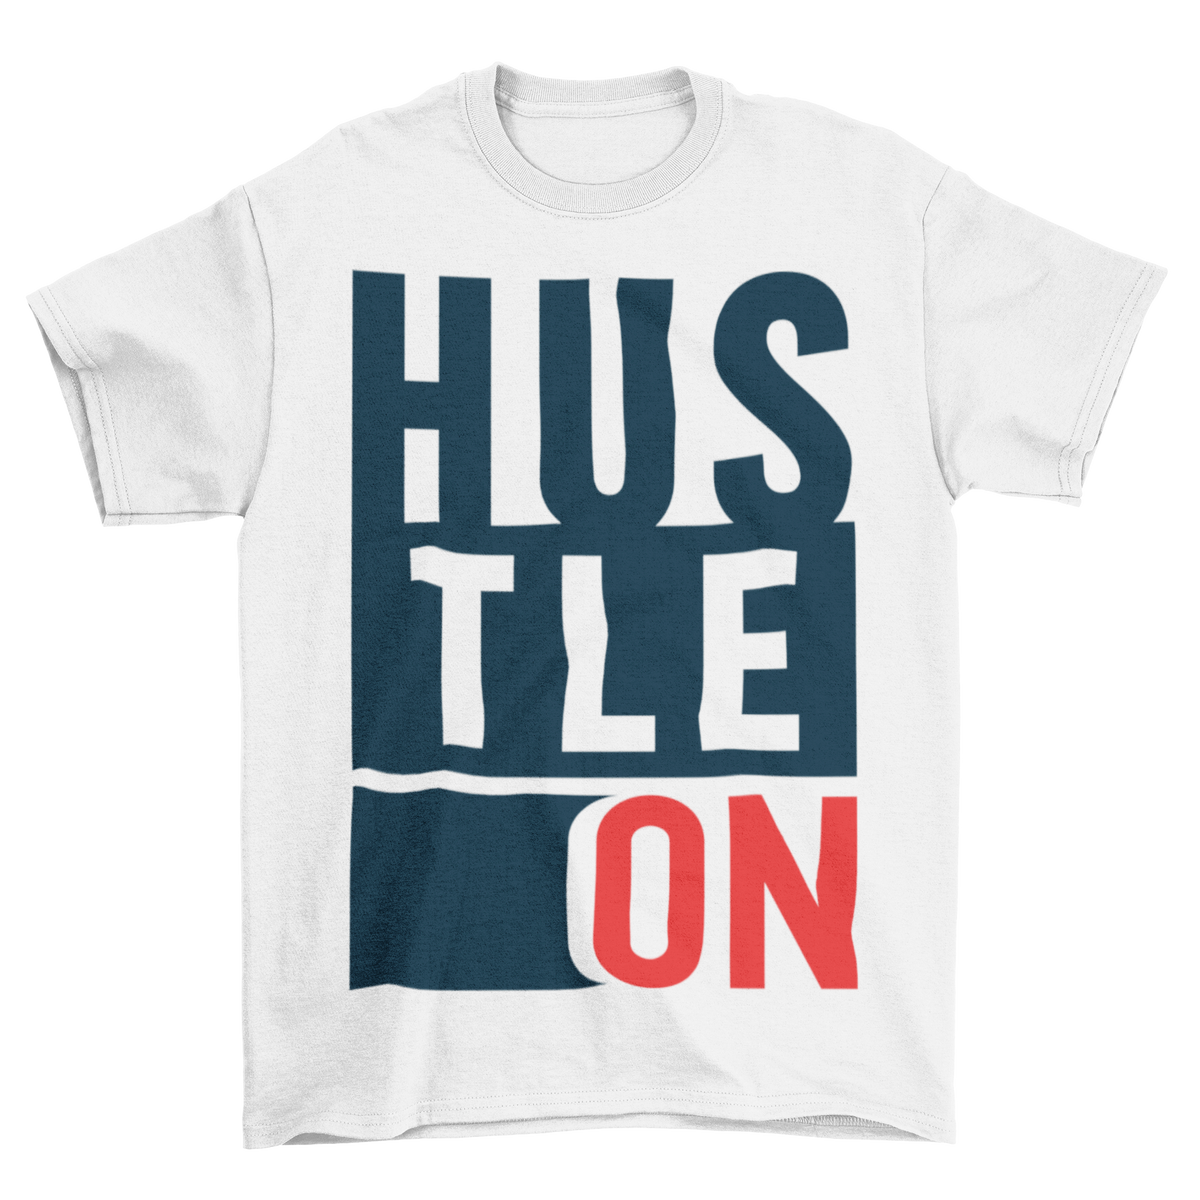 Hustle On - T-shirt Unisex